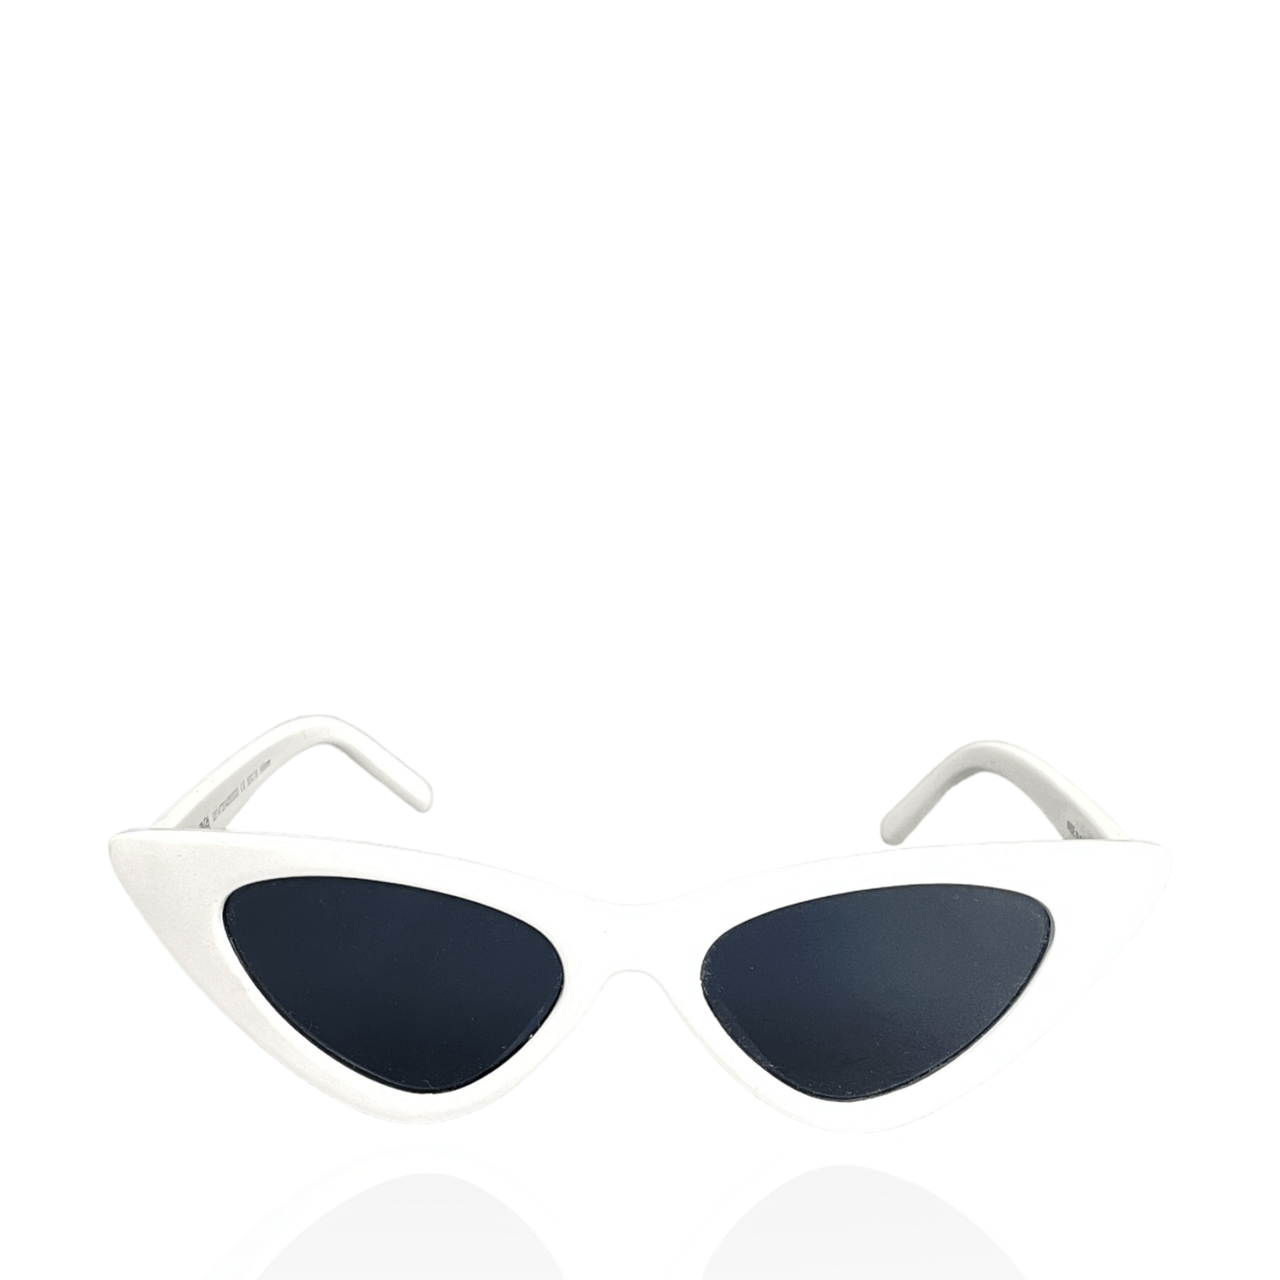 Zara Black & White Sunglasses